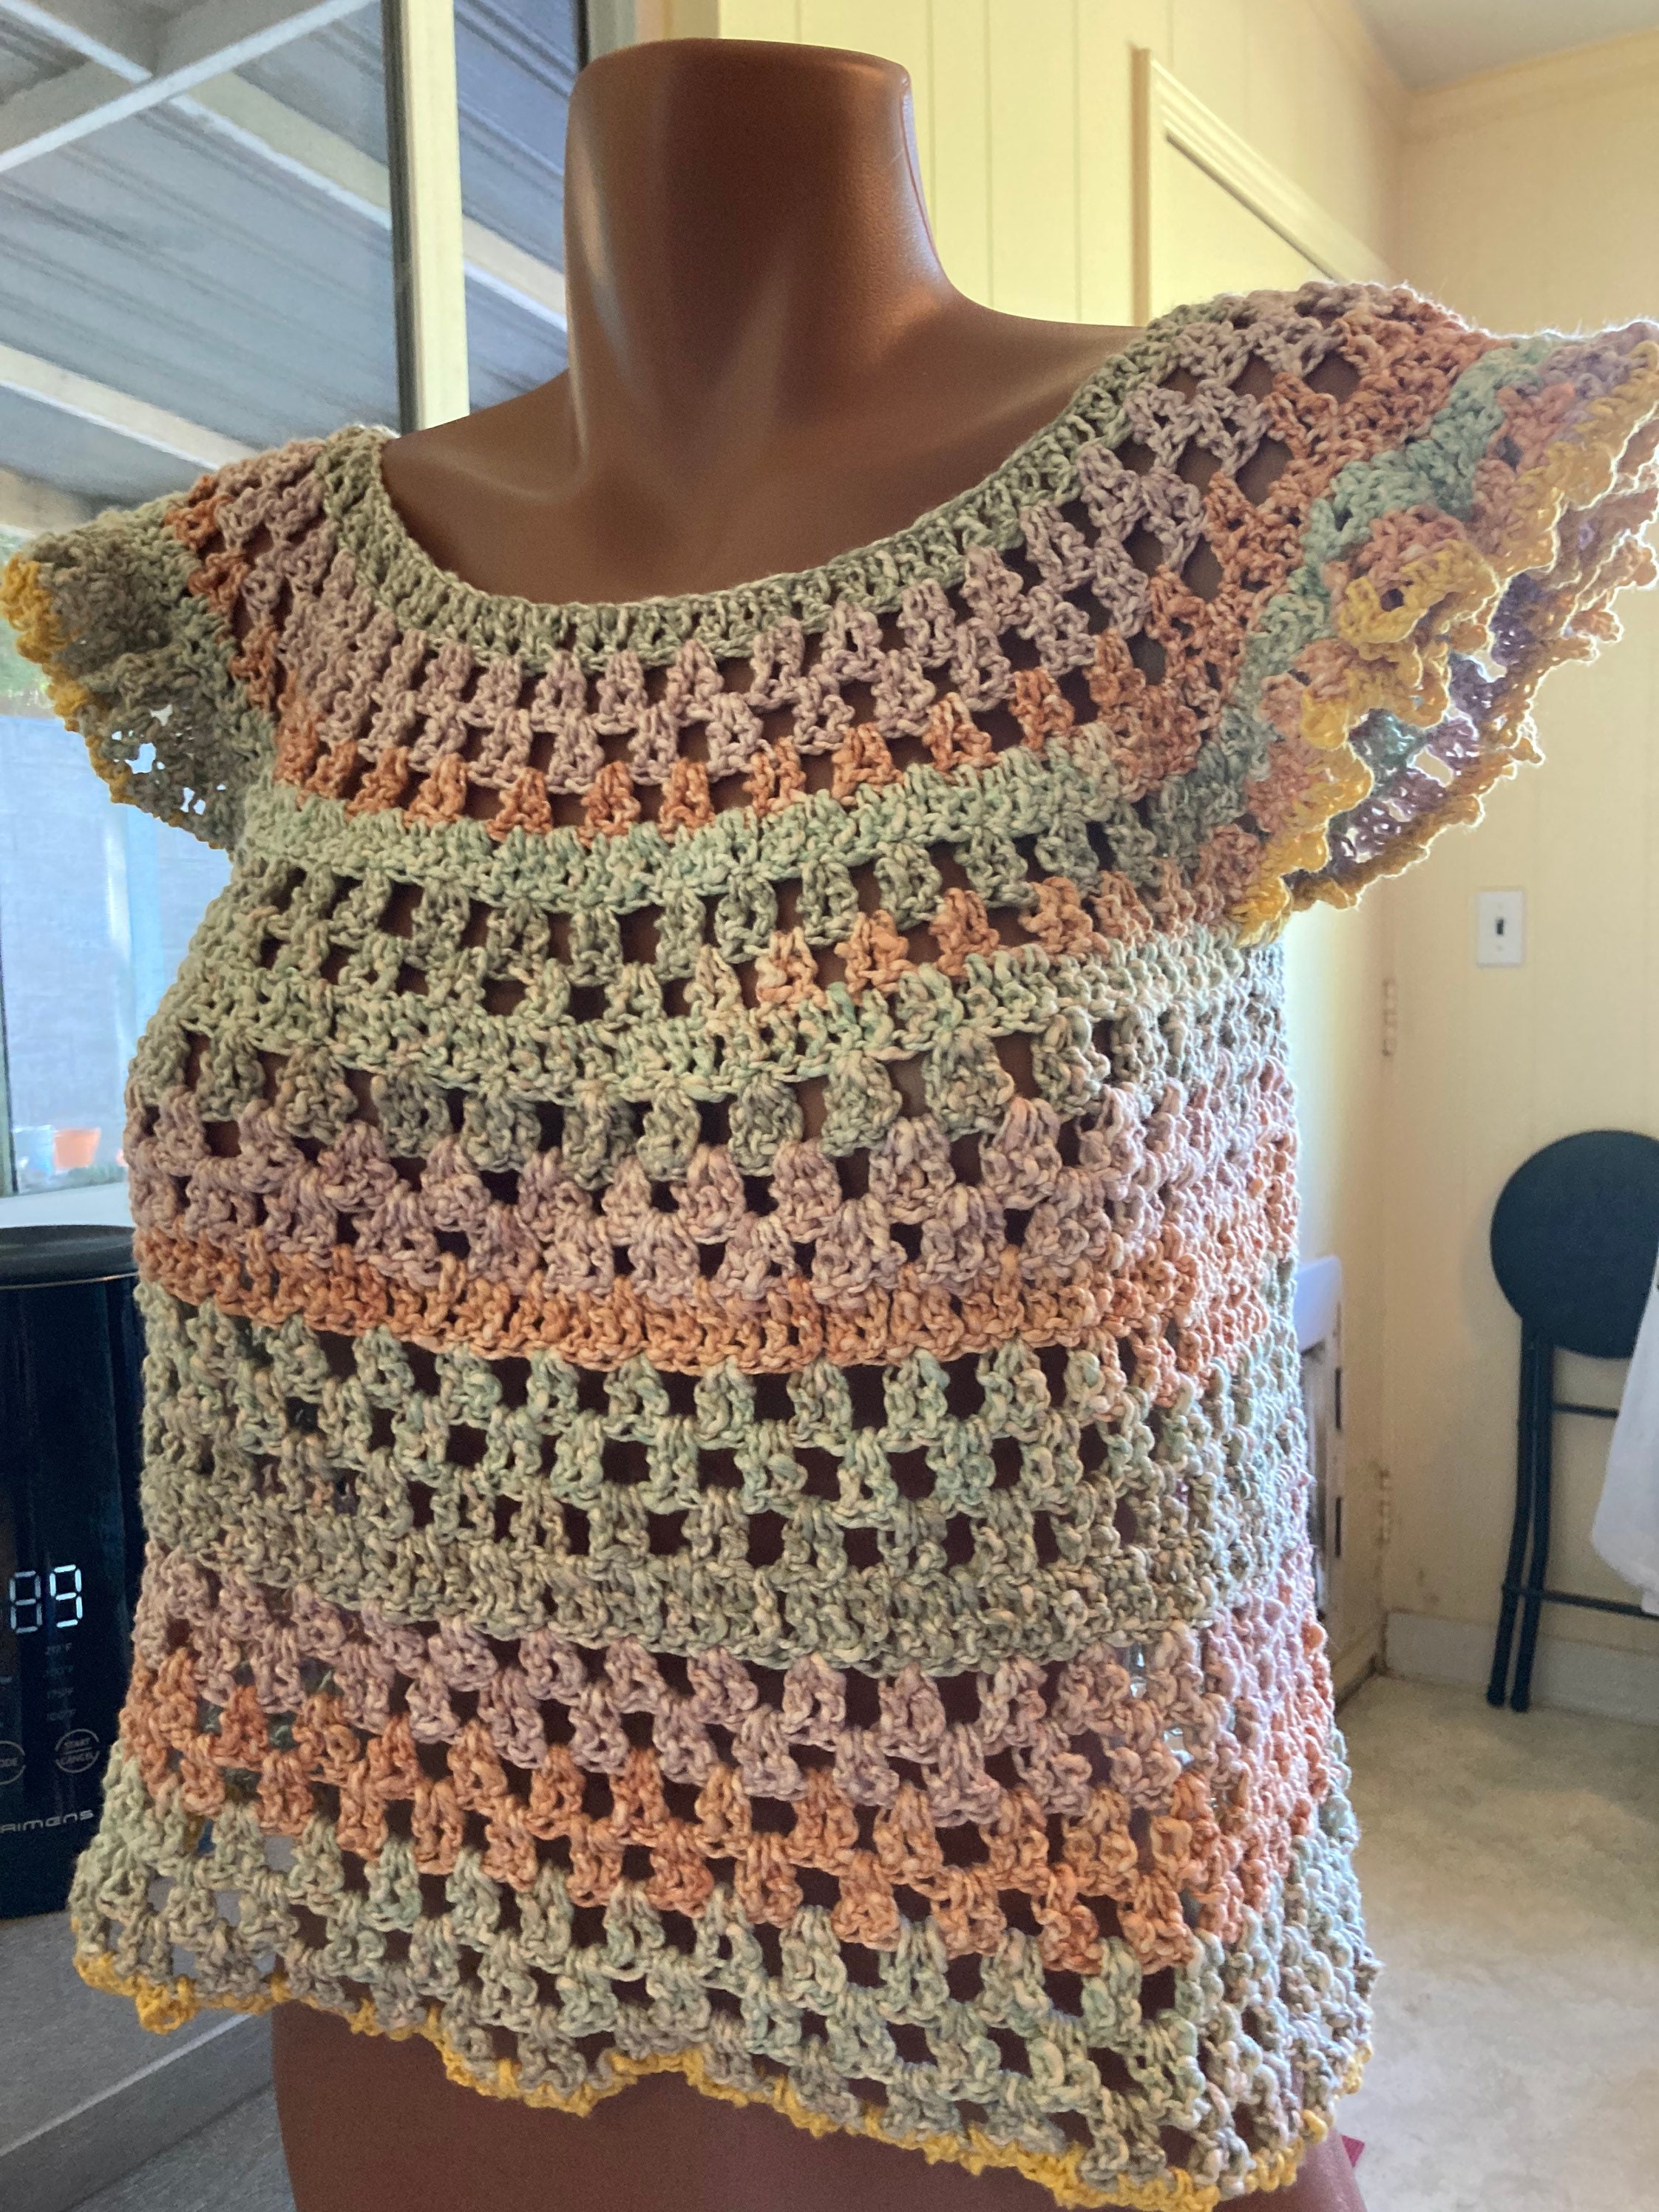 Crochet Kira Top full Length - Etsy